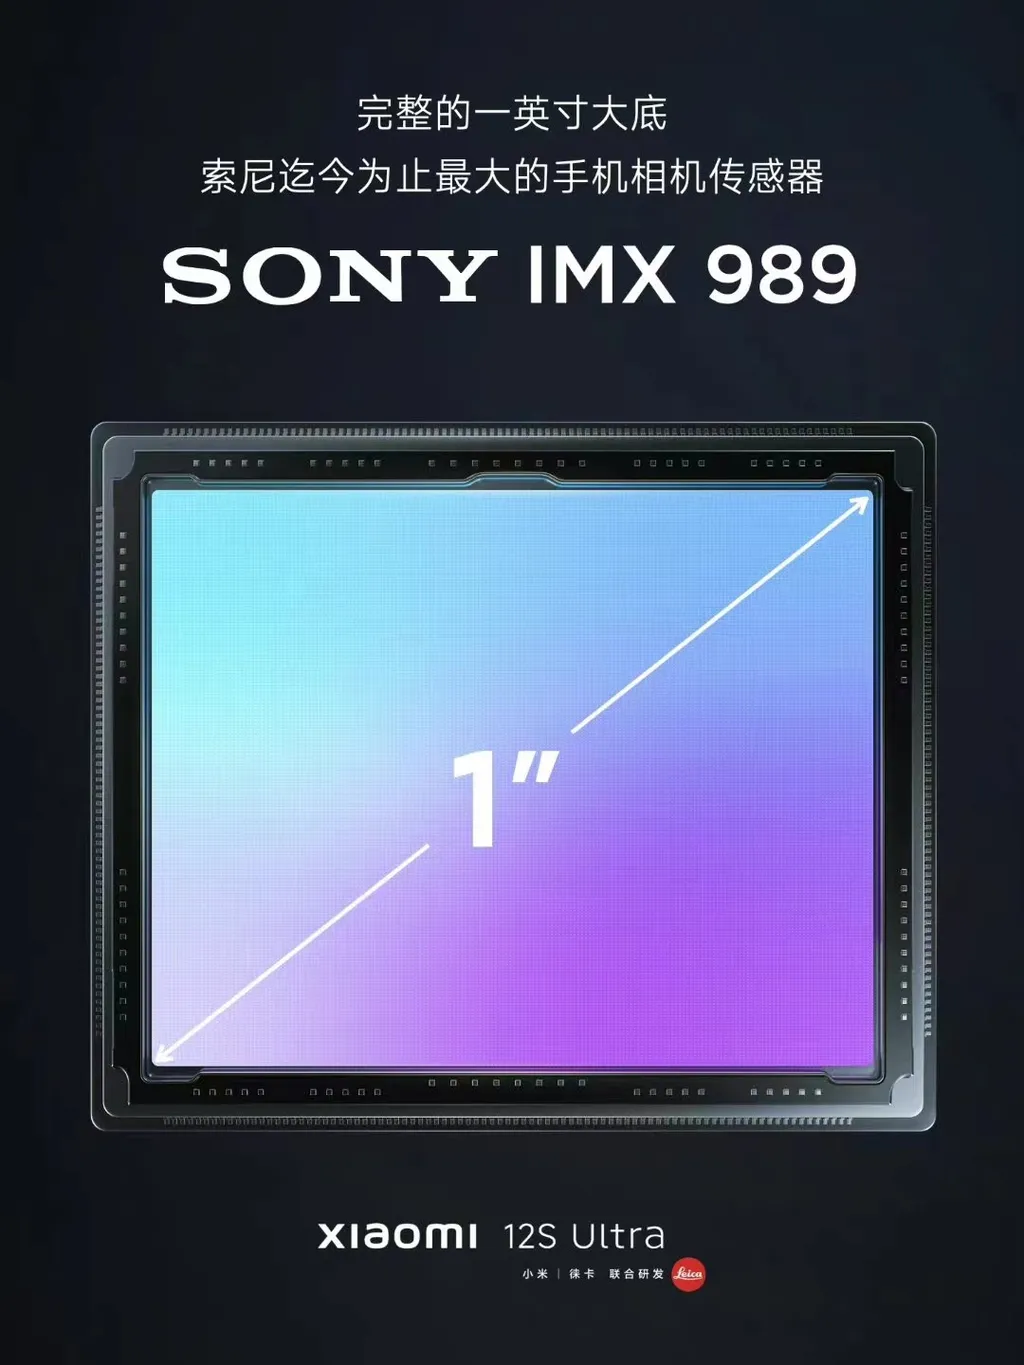 Teaser confirma Xiaomi 12S Ultra com maior sensor da Sony (Imagem: Reprodução/Xiaomi)